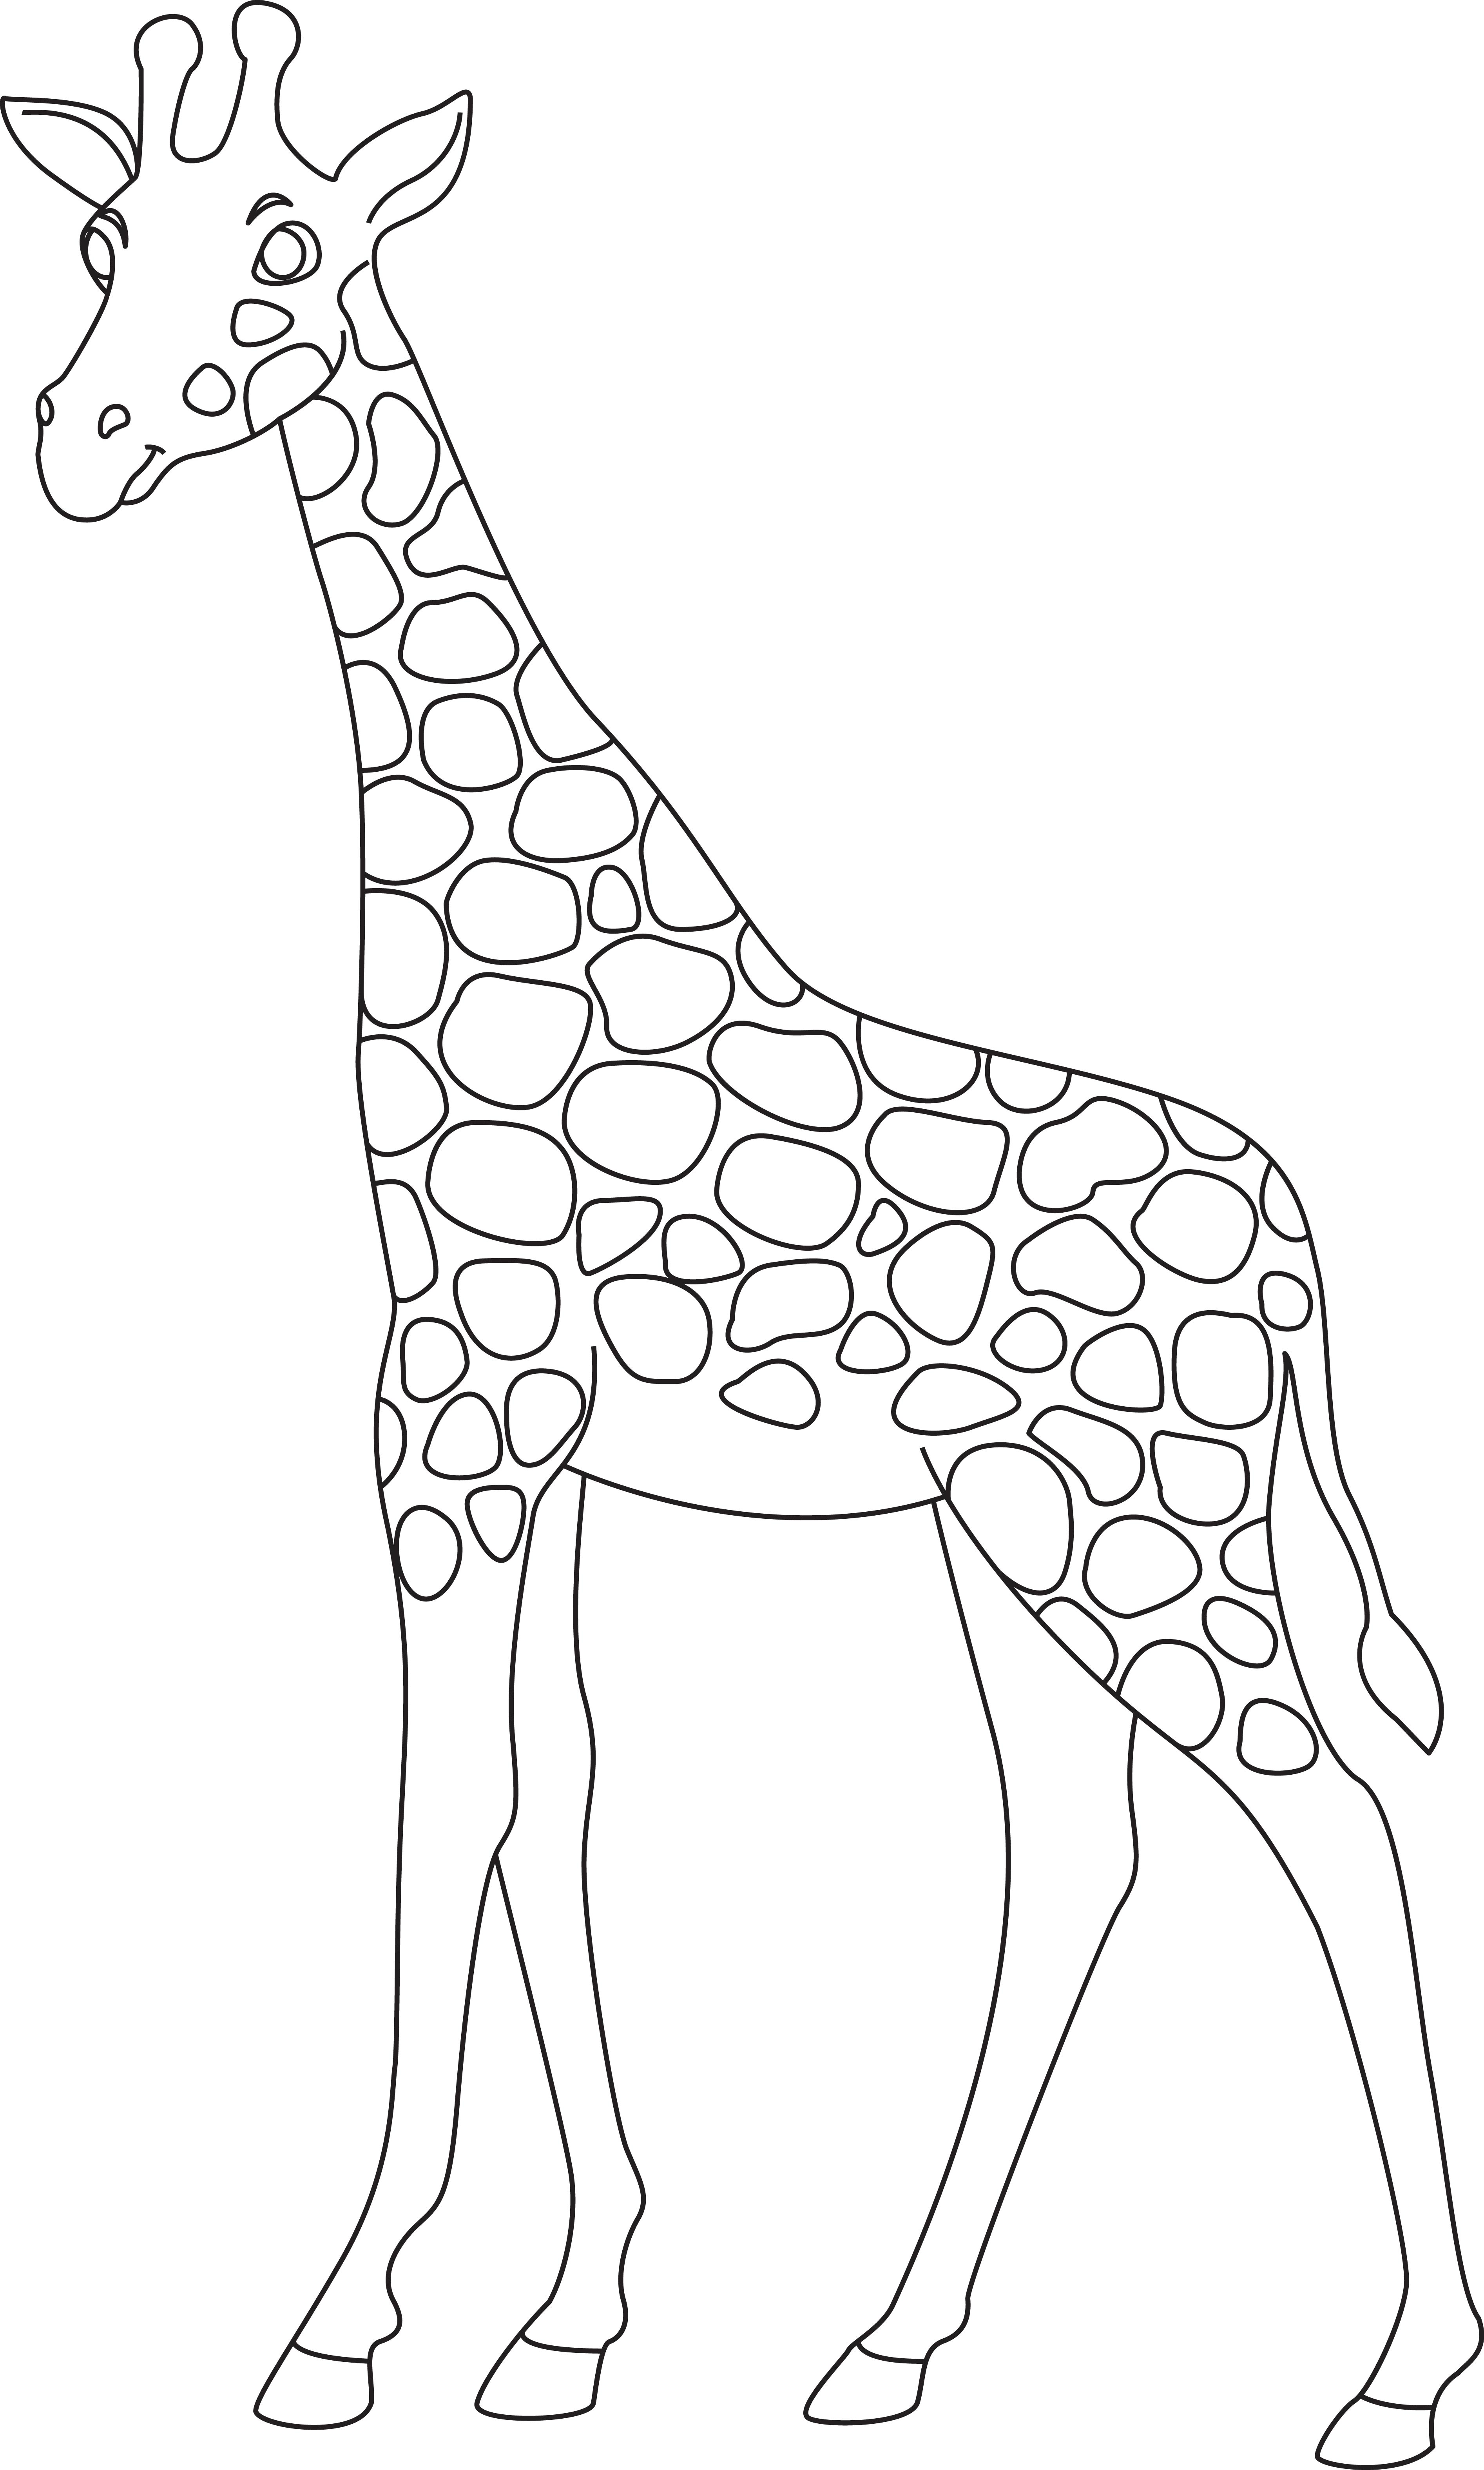 Раскраска стройный жираф формата А4 в высоком качестве